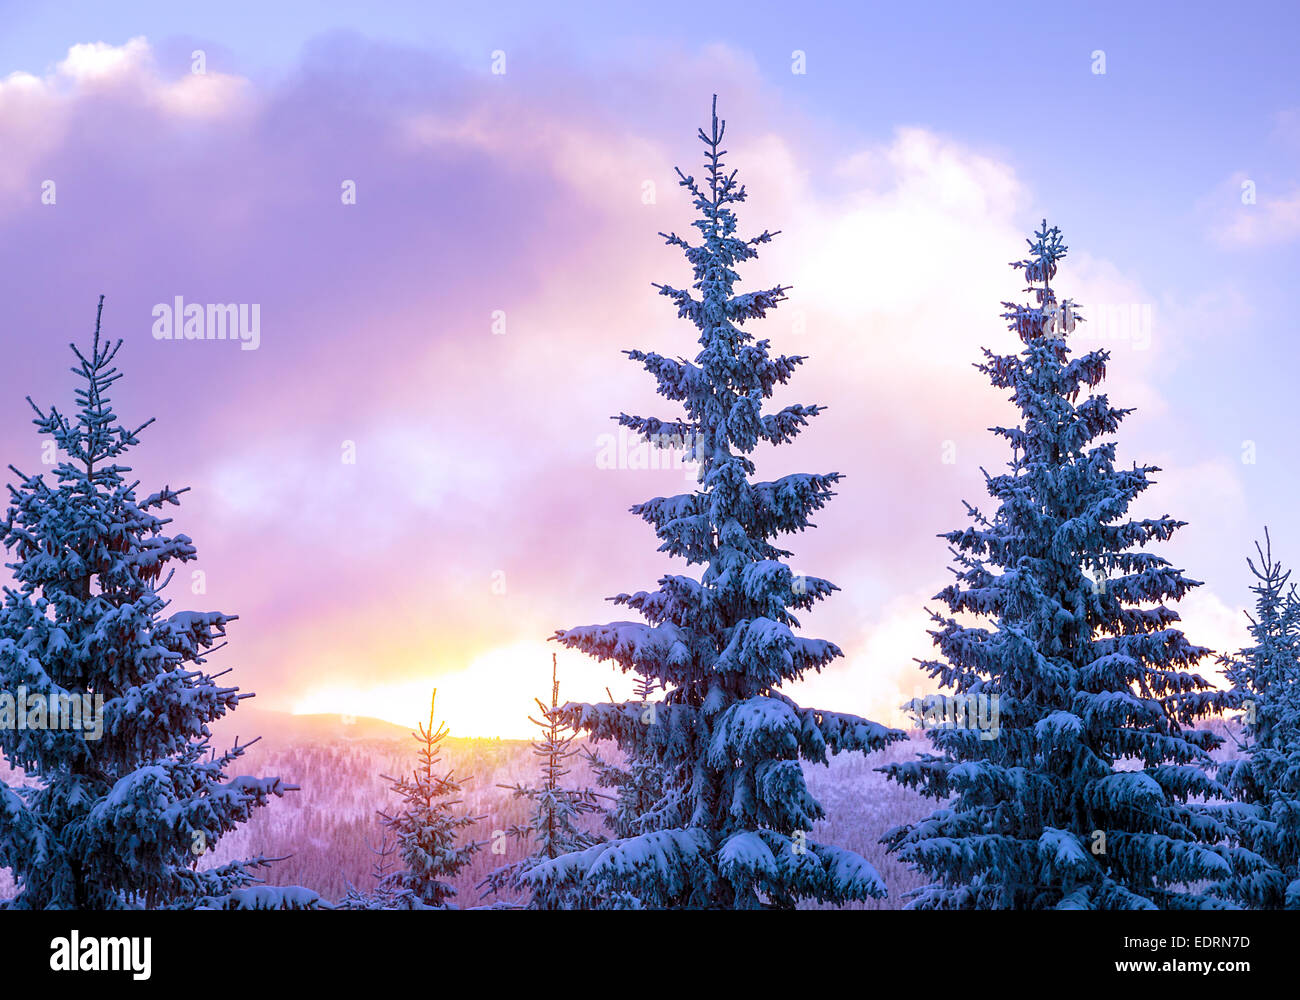 Beau paysage d'hiver, de magnifiques sapins couverts de haut avec la neige fraîche et blanche dans une légère lumière au coucher du soleil, la beauté de l'hiver Banque D'Images